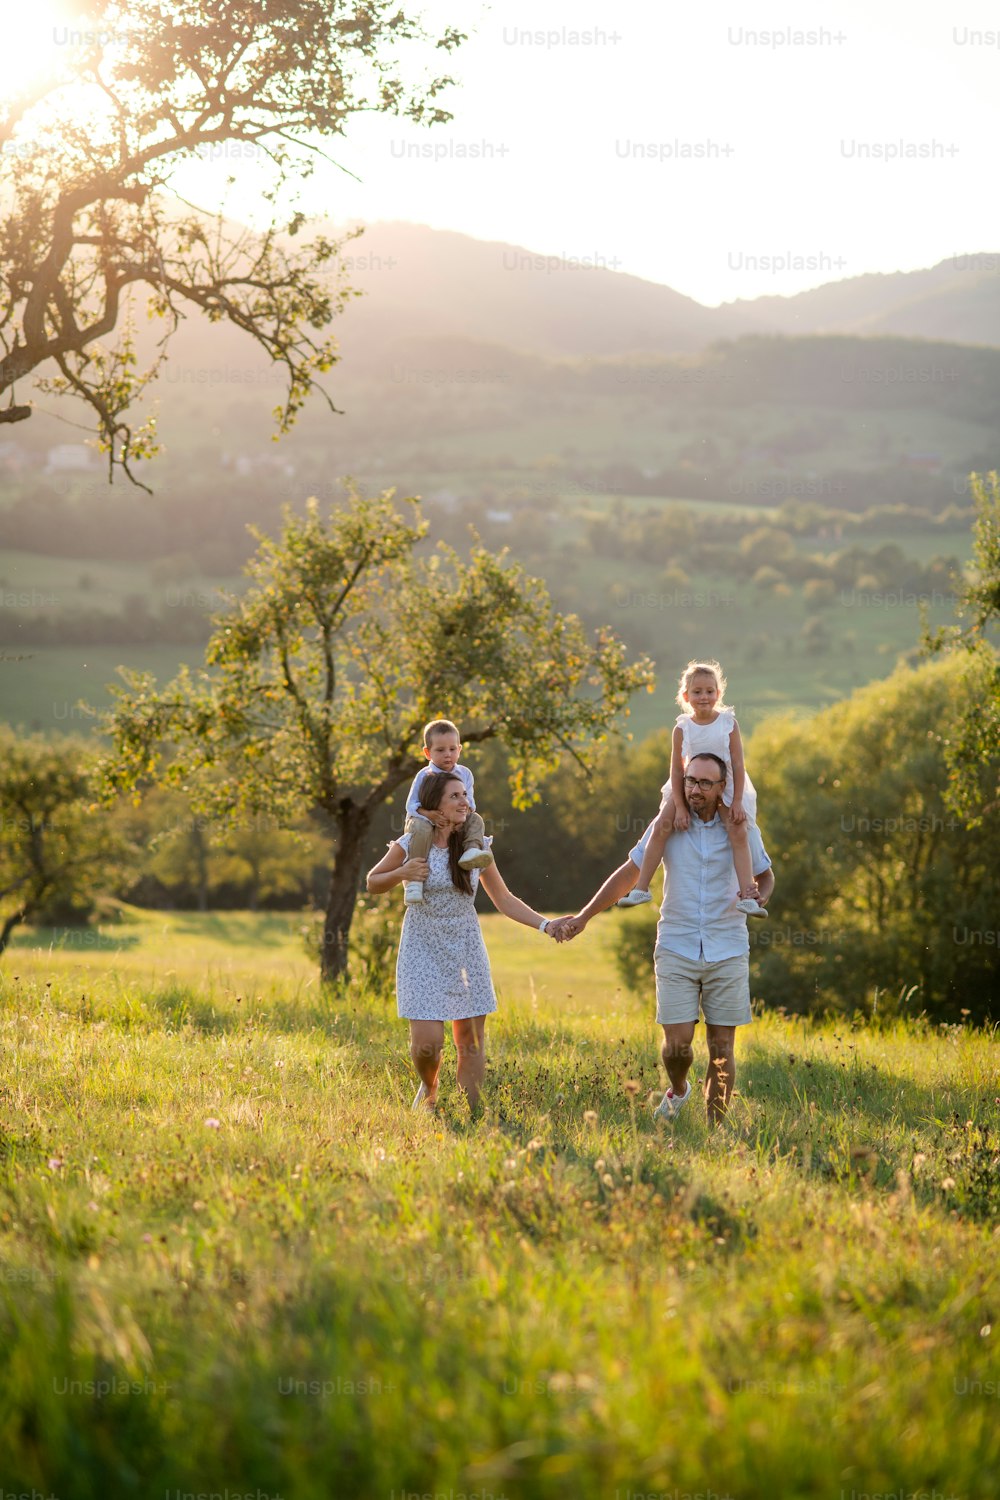 Vista frontal de la familia con dos niños pequeños caminando en el prado al aire libre al atardecer, paseo a cuestas.